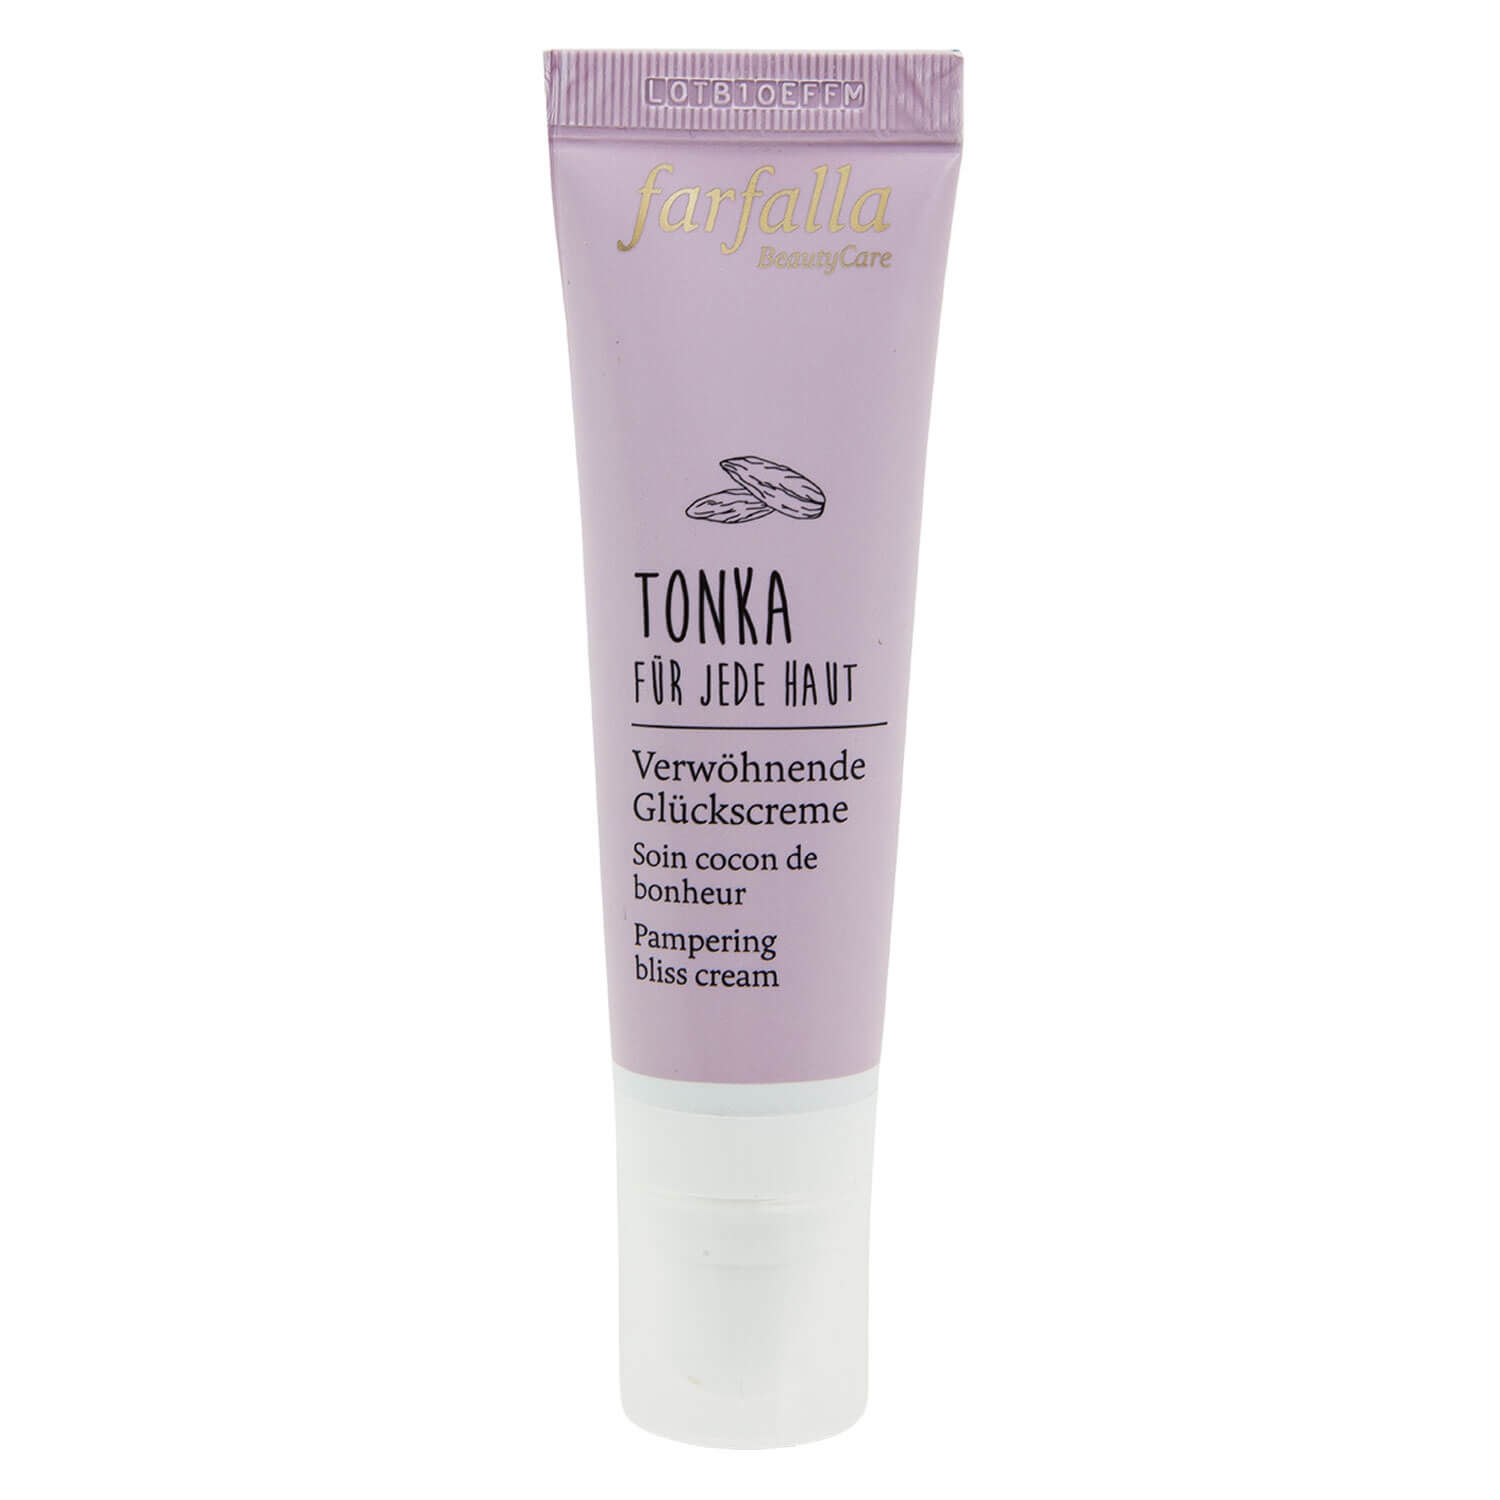 Produktbild von Farfalla Care - Tonka Für jede Haut, Verwöhnende Glückscreme